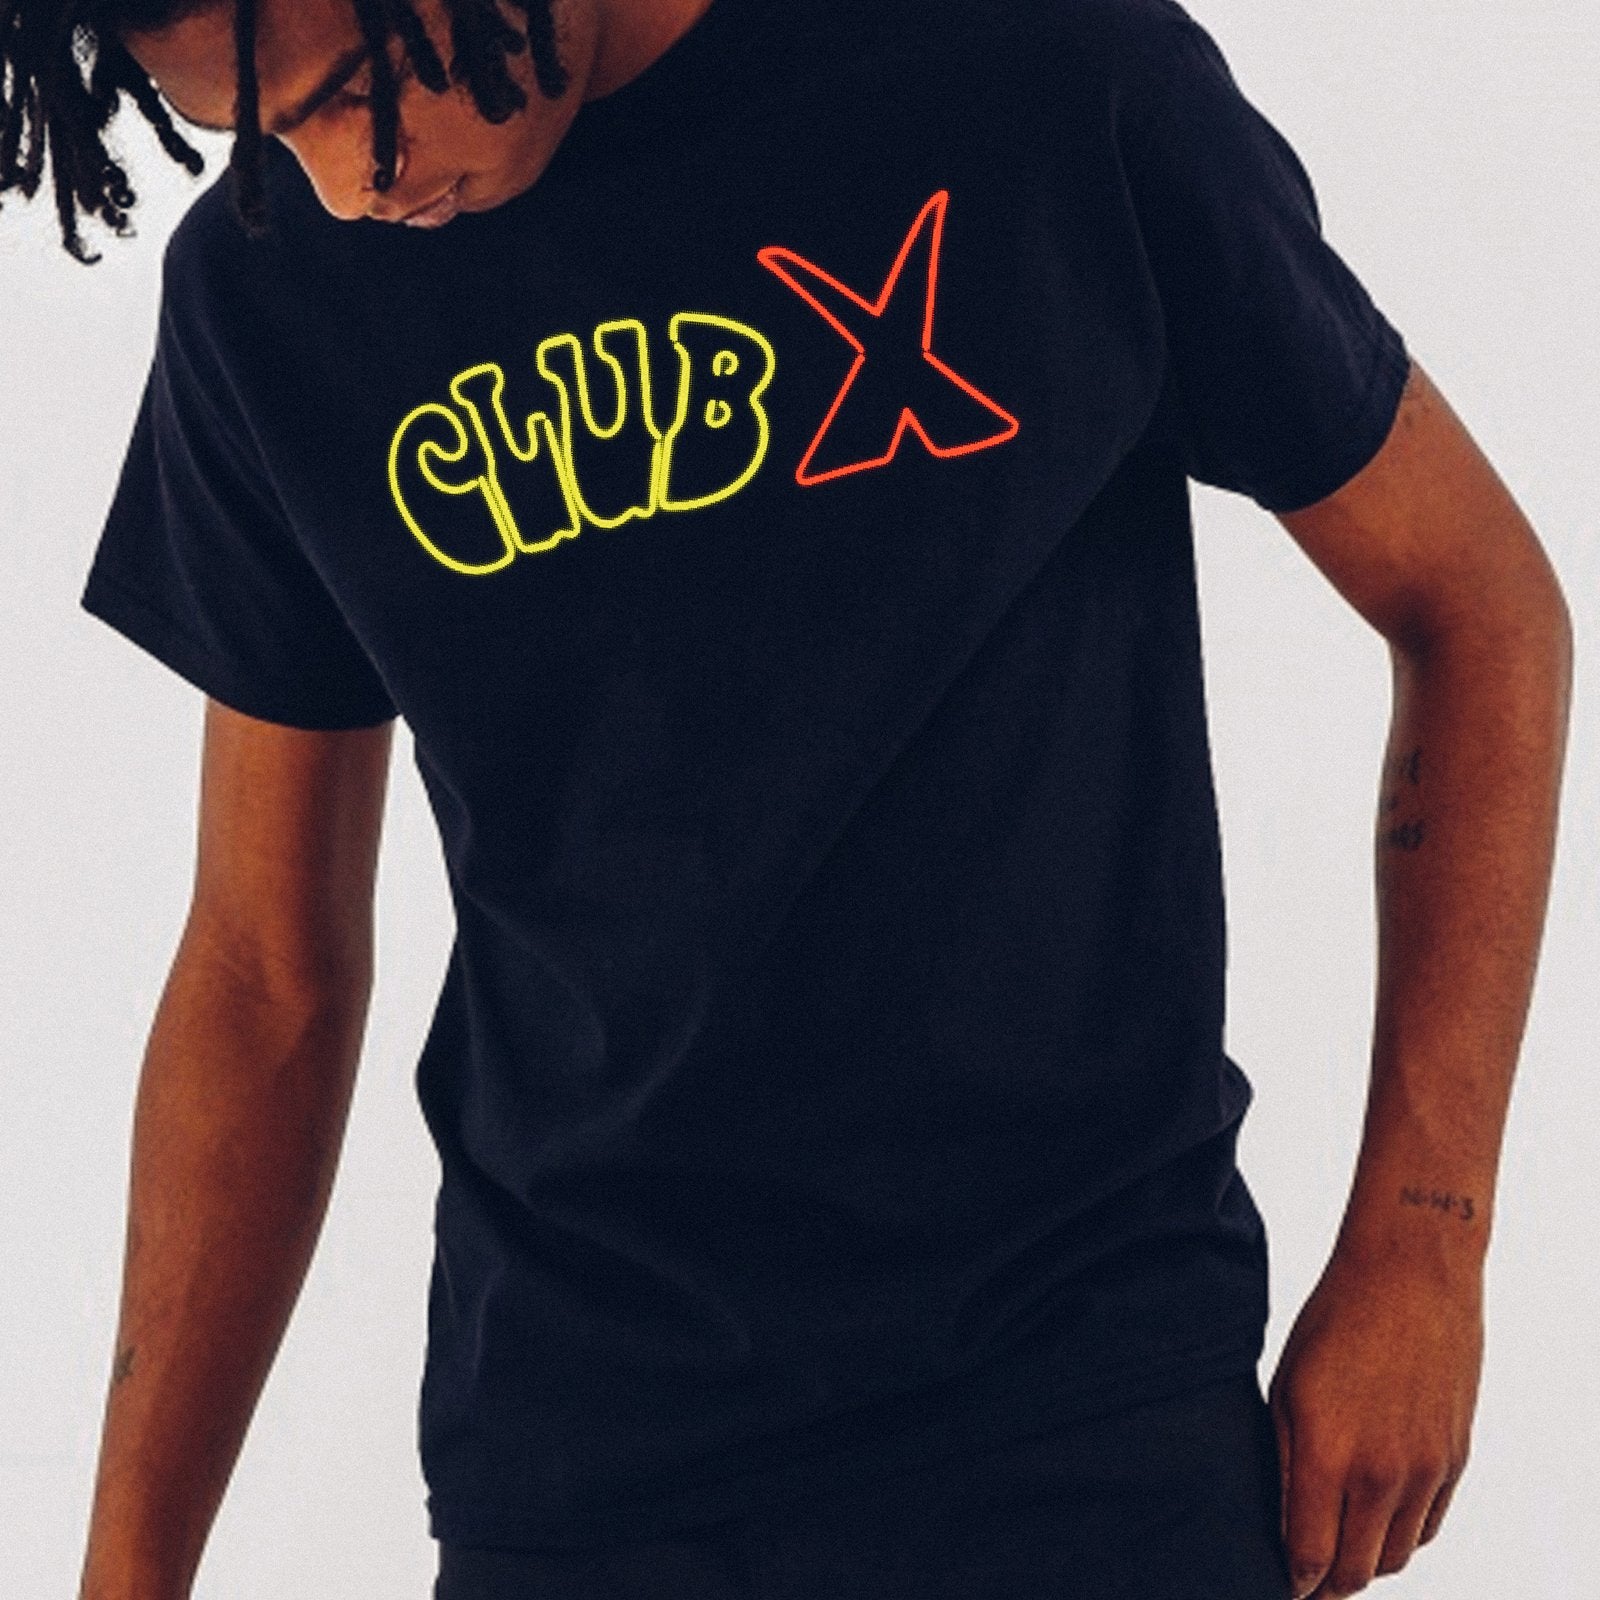 Club X Neon T-Shirt  - Club X